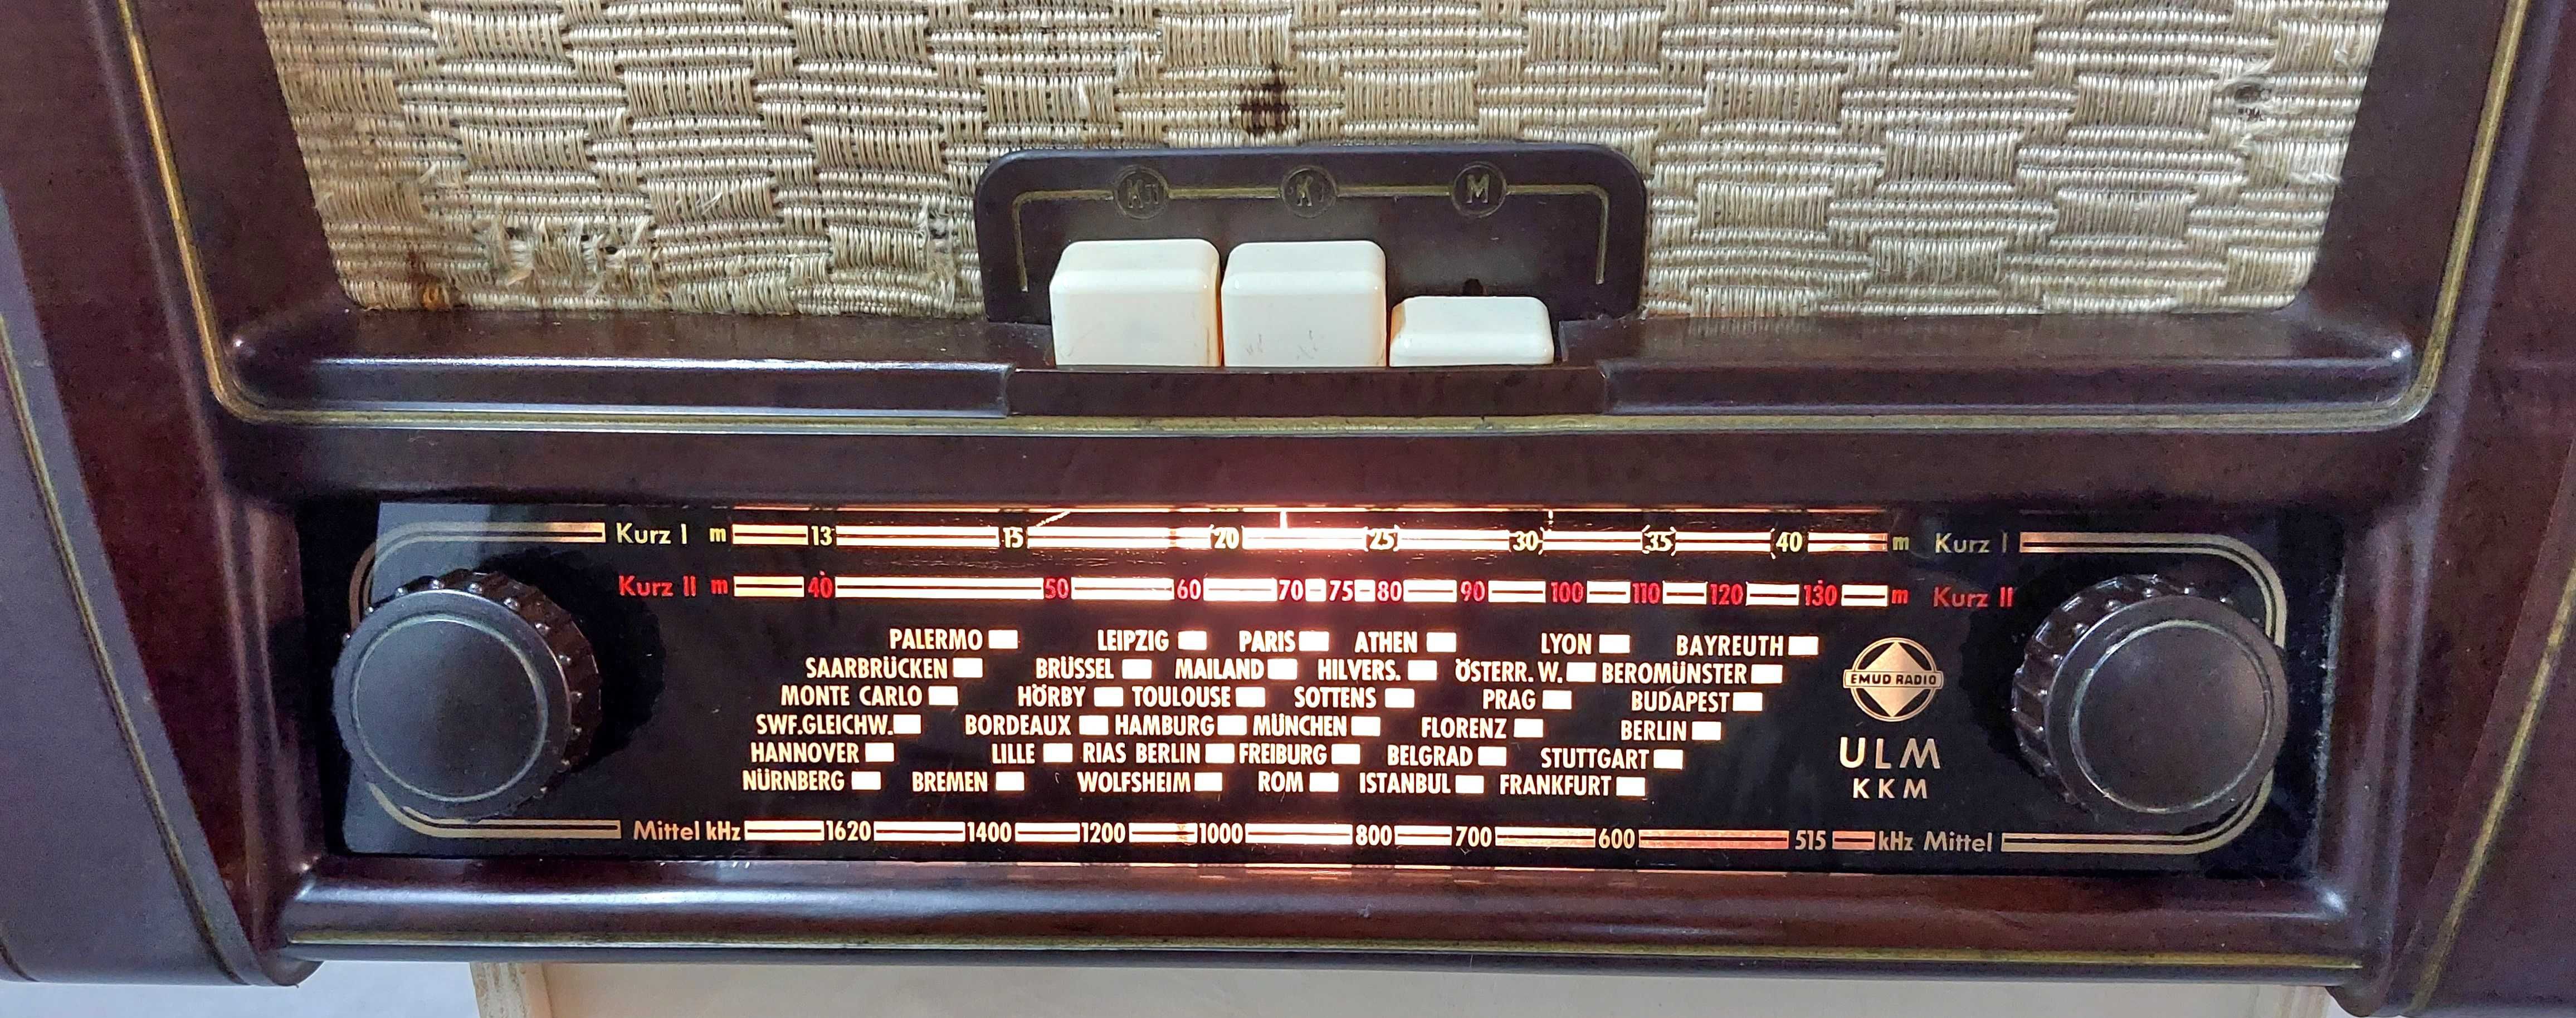 Rádio antigo EMUD